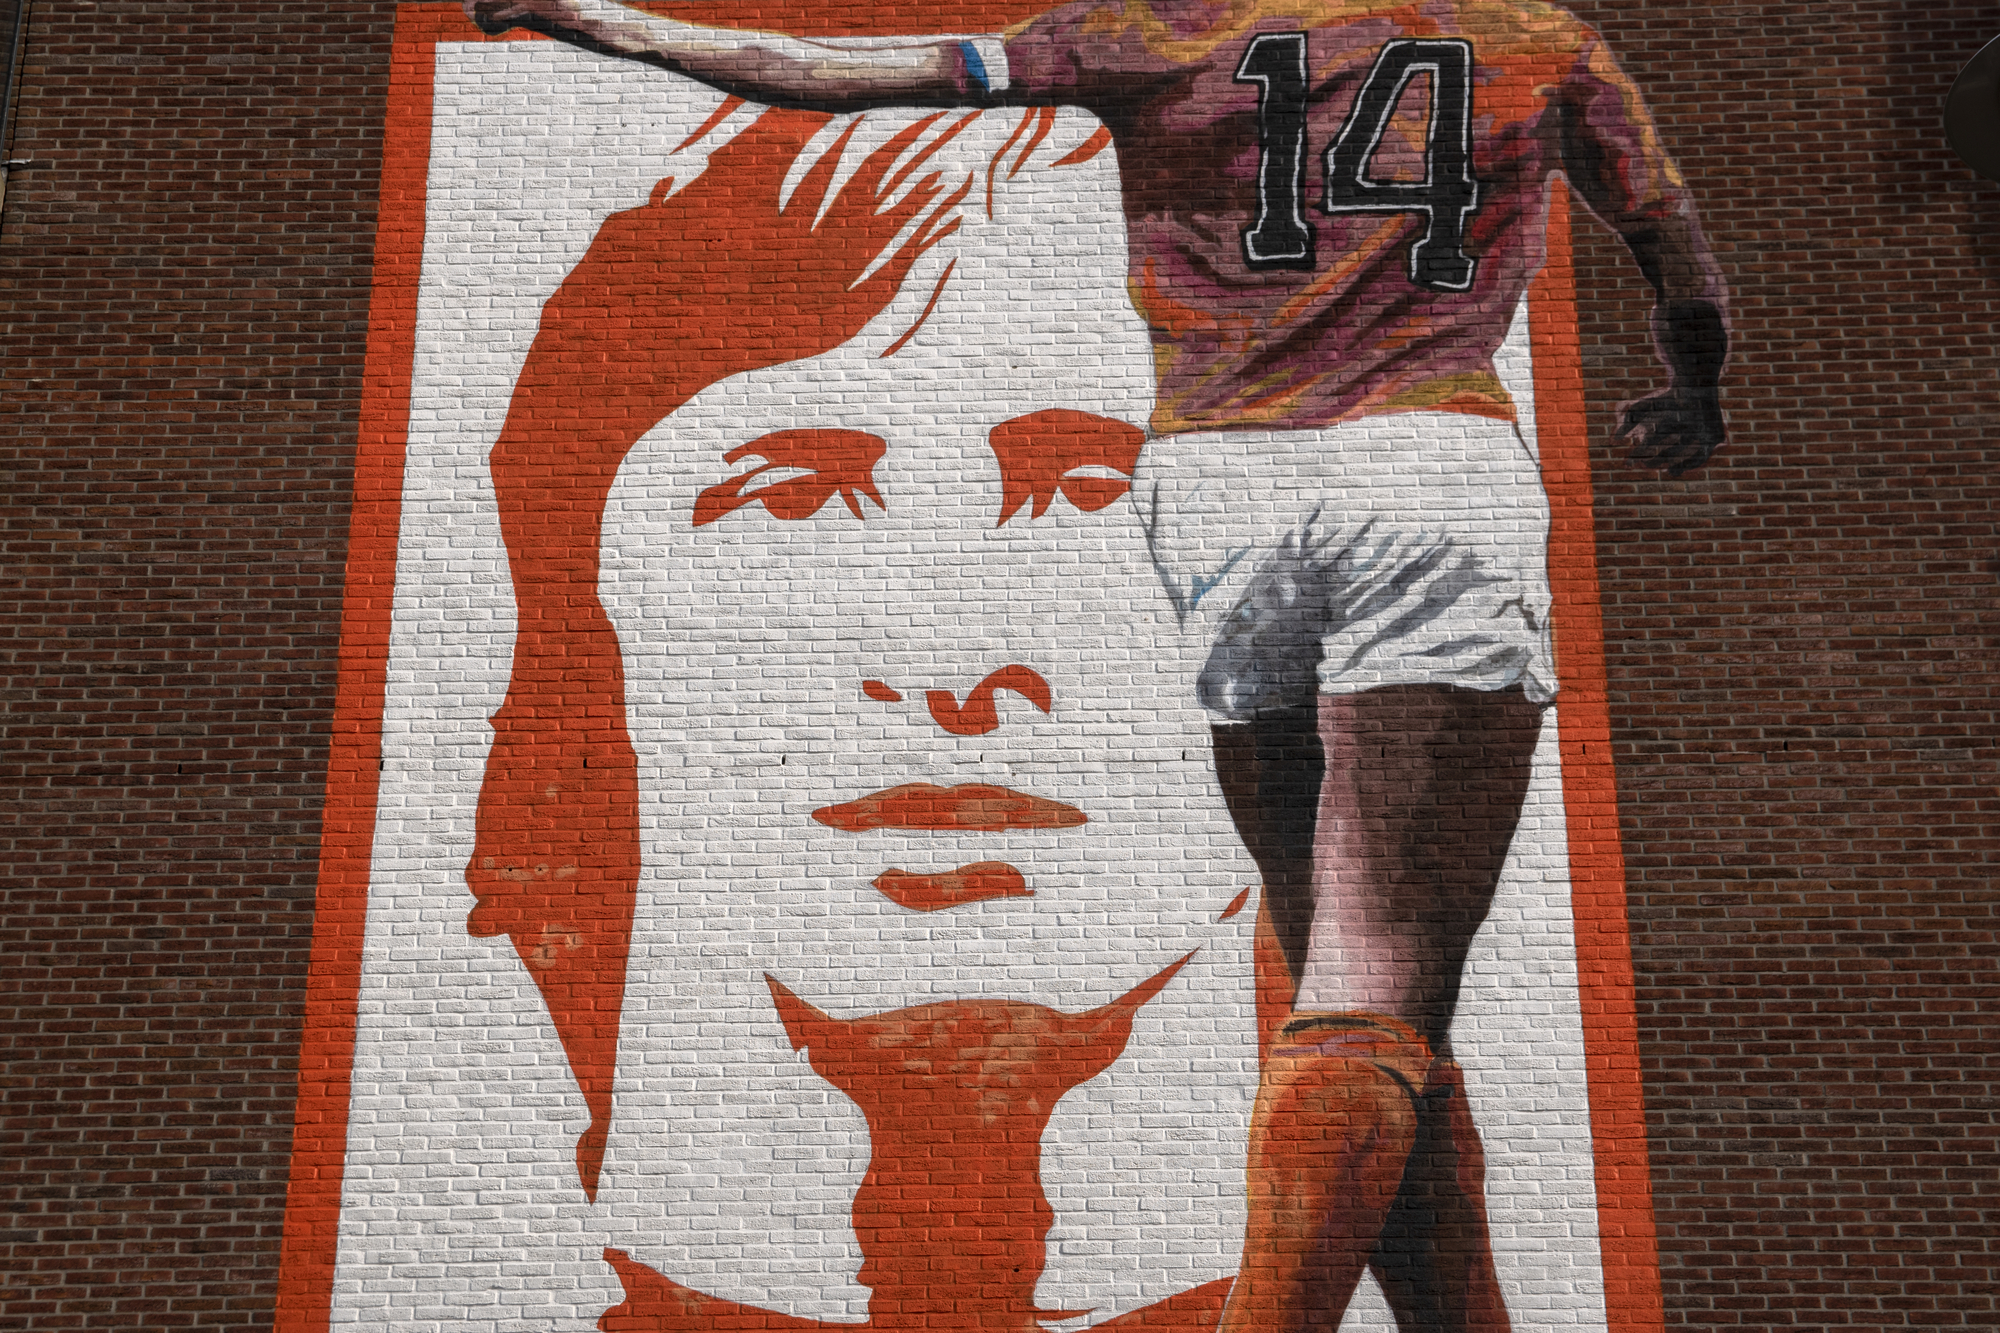 Johan Cruyff revolucionó el concepto del fútbol existente